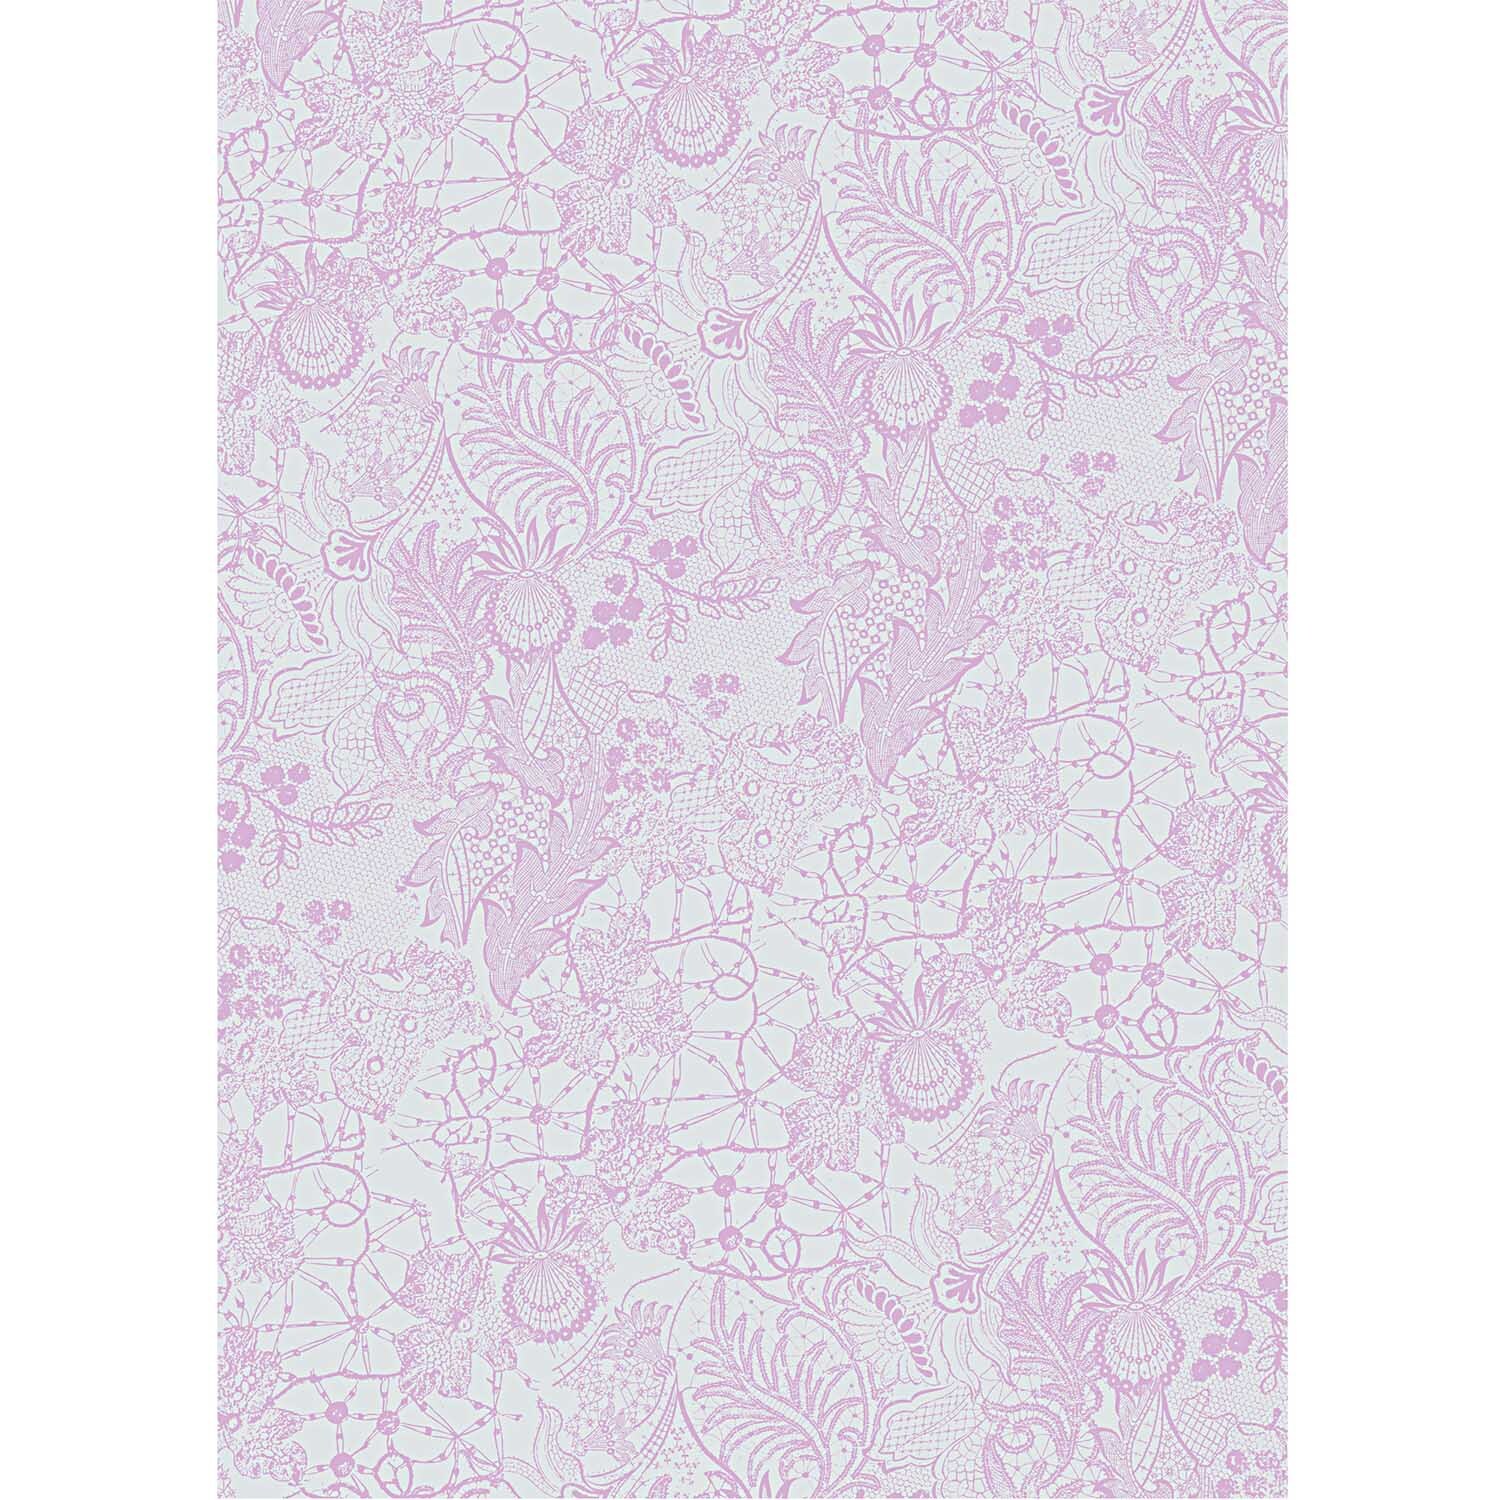 Paper Patch Papier Spitze violett 30x42cm